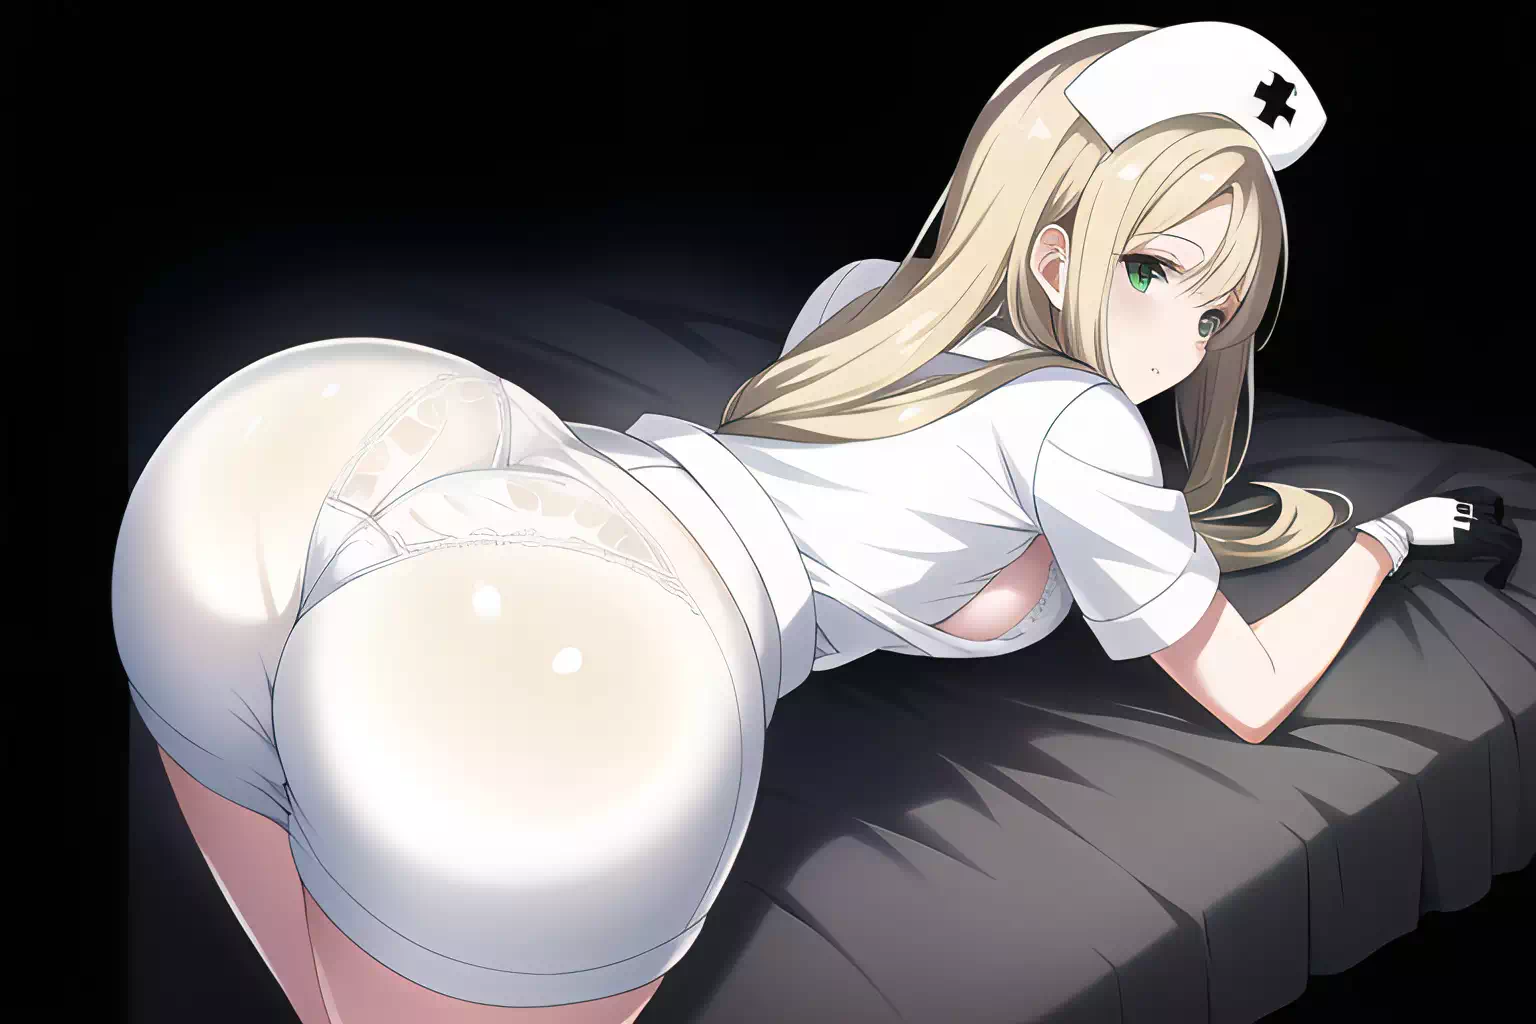 Nurse with big ass bending over